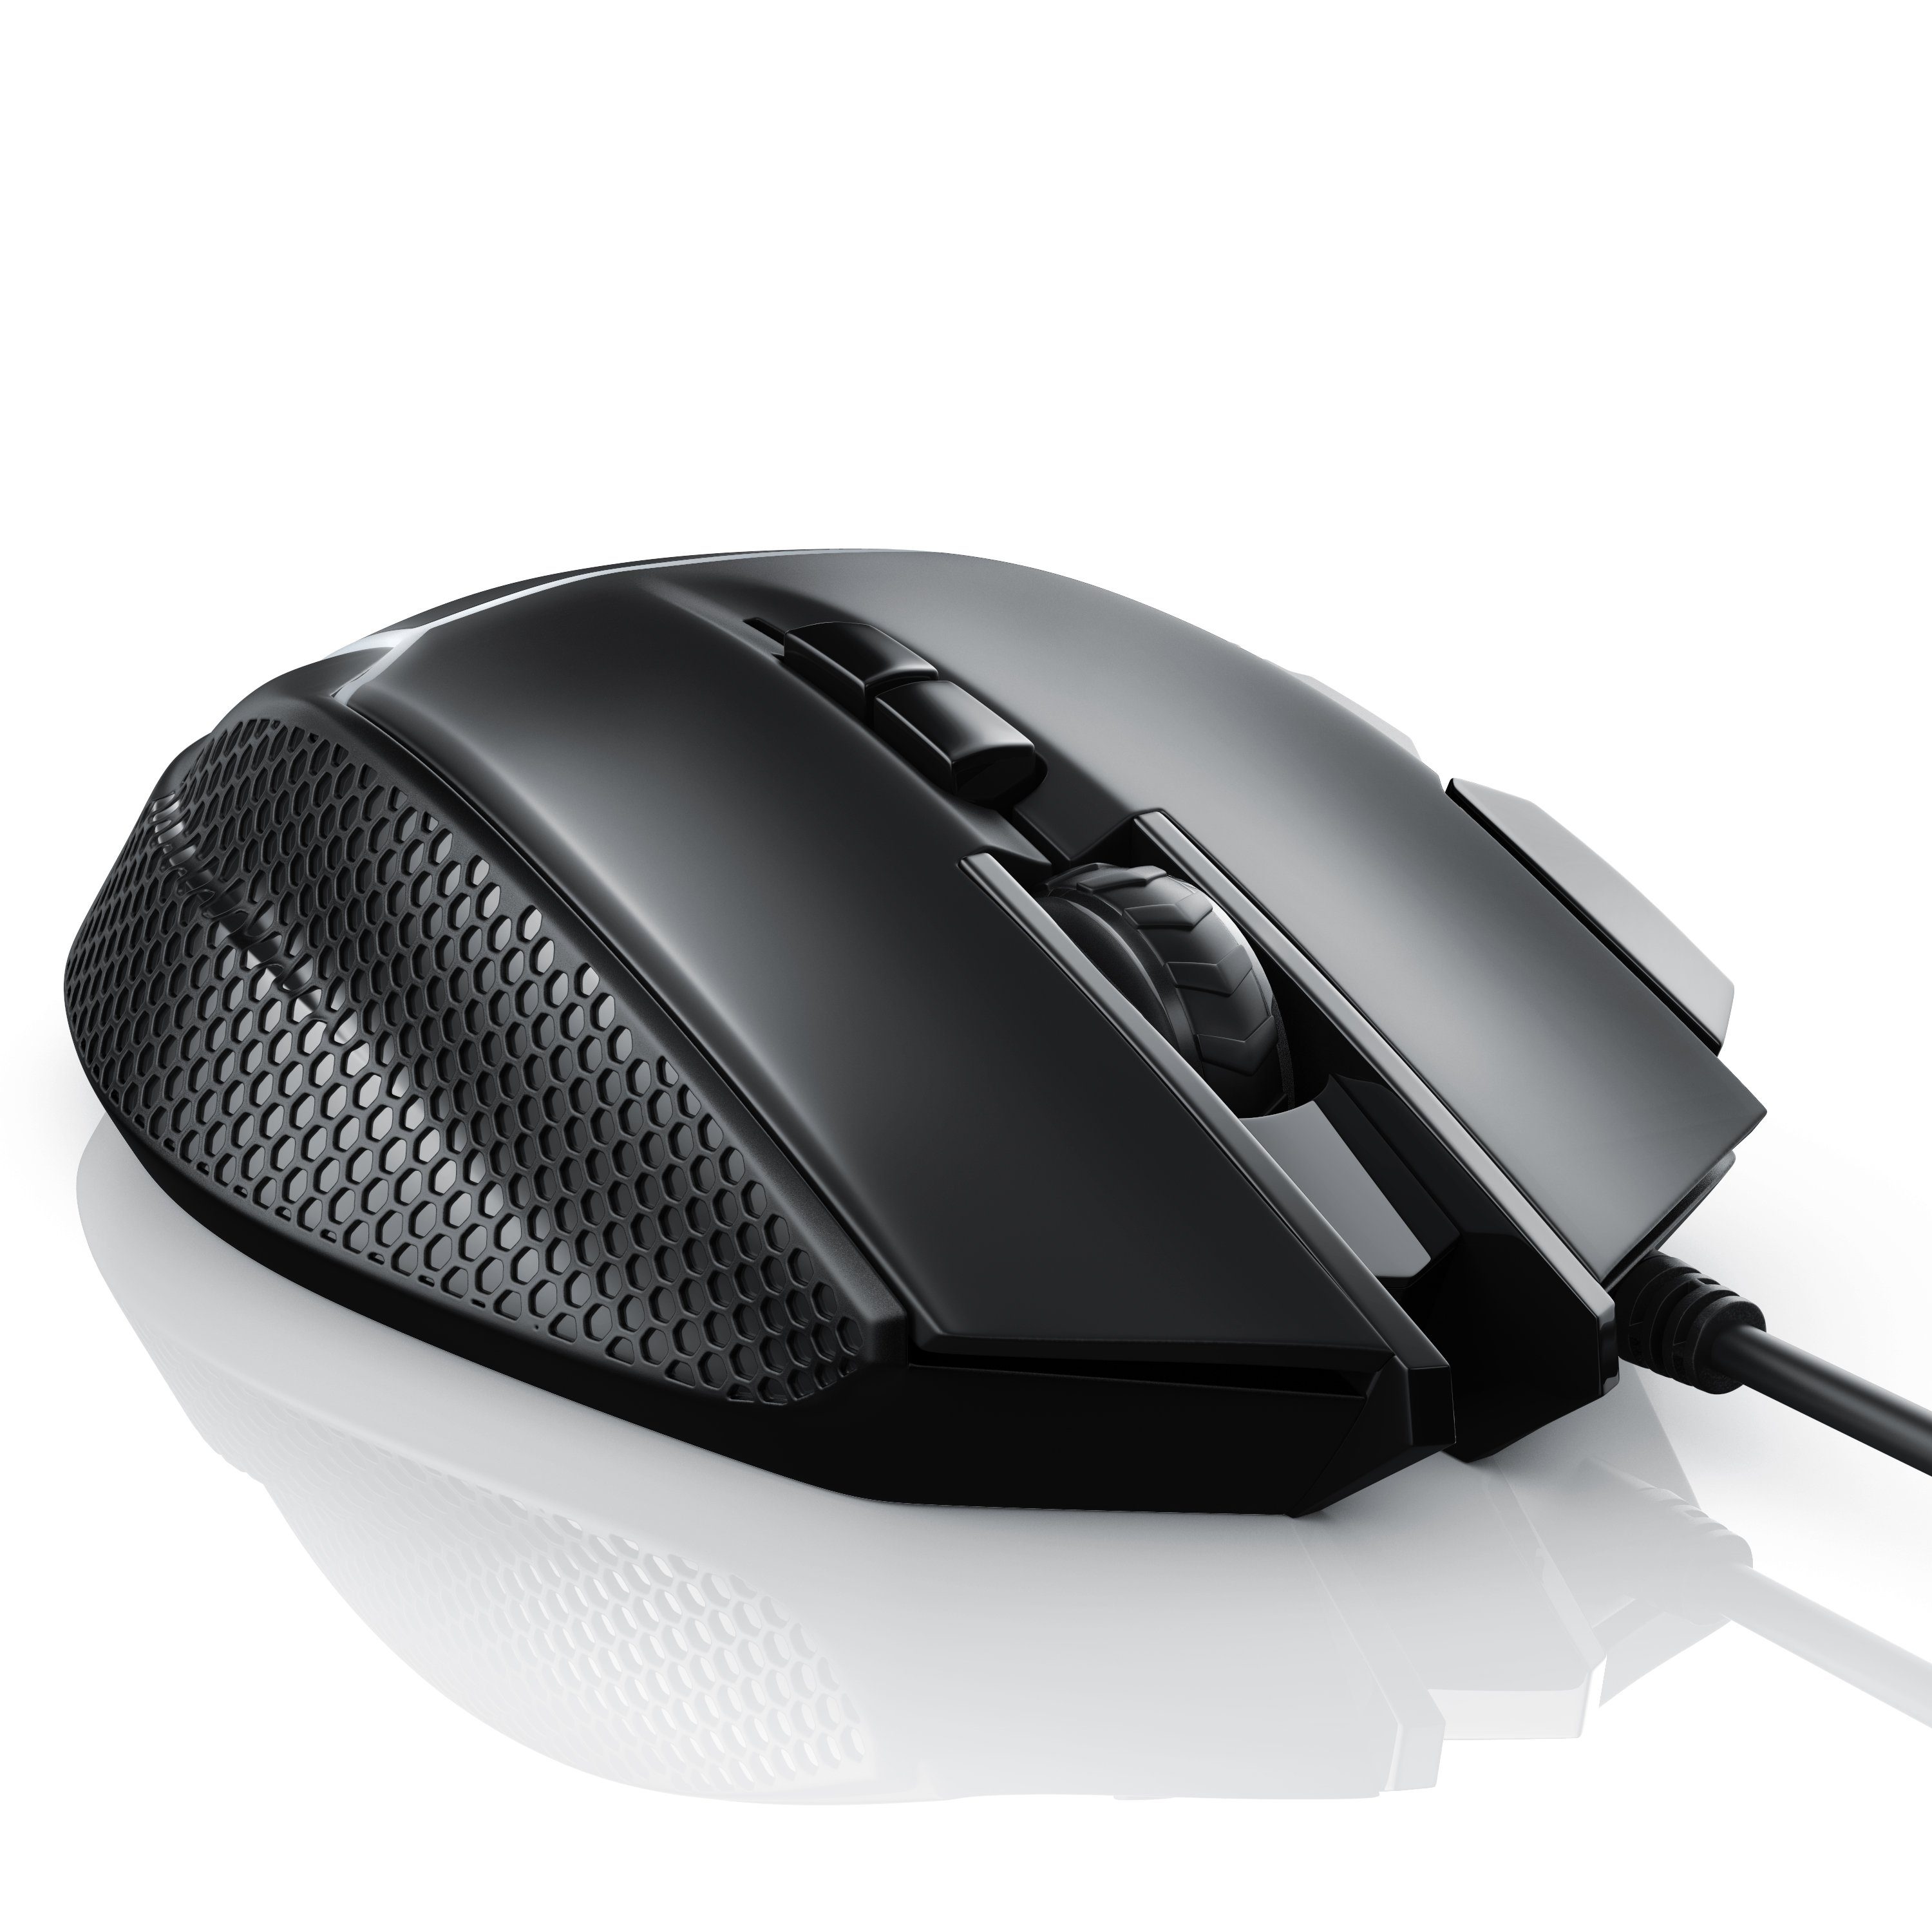 CSL Gaming-Maus (kabelgebunden, 500 dpi, 3200 Mouse Gewichten) inkl. wählbar, dpi, Abtastrate ergonomisch